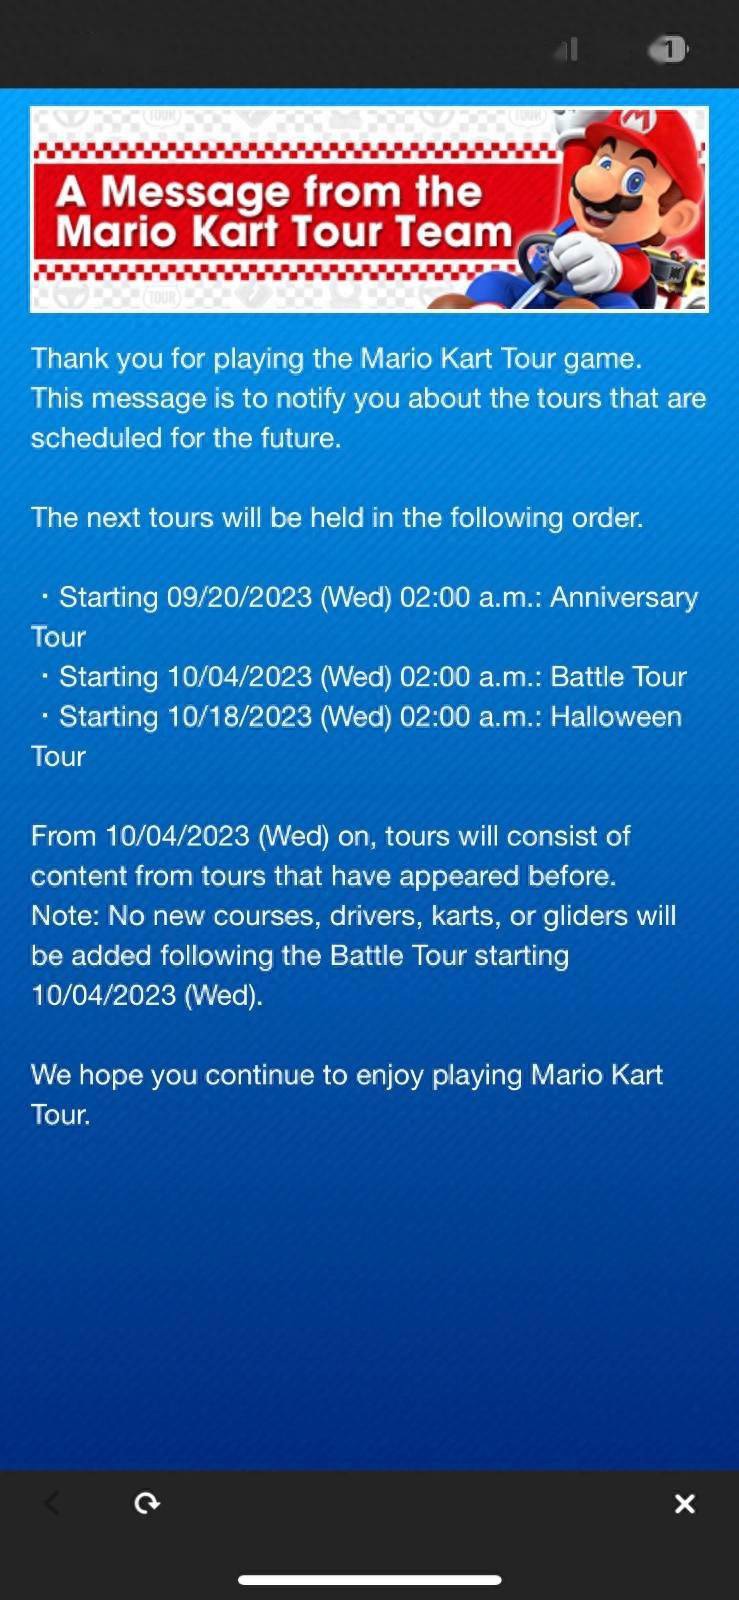 任天堂宣布停止为《马里奥赛车巡回赛》手游更新内容